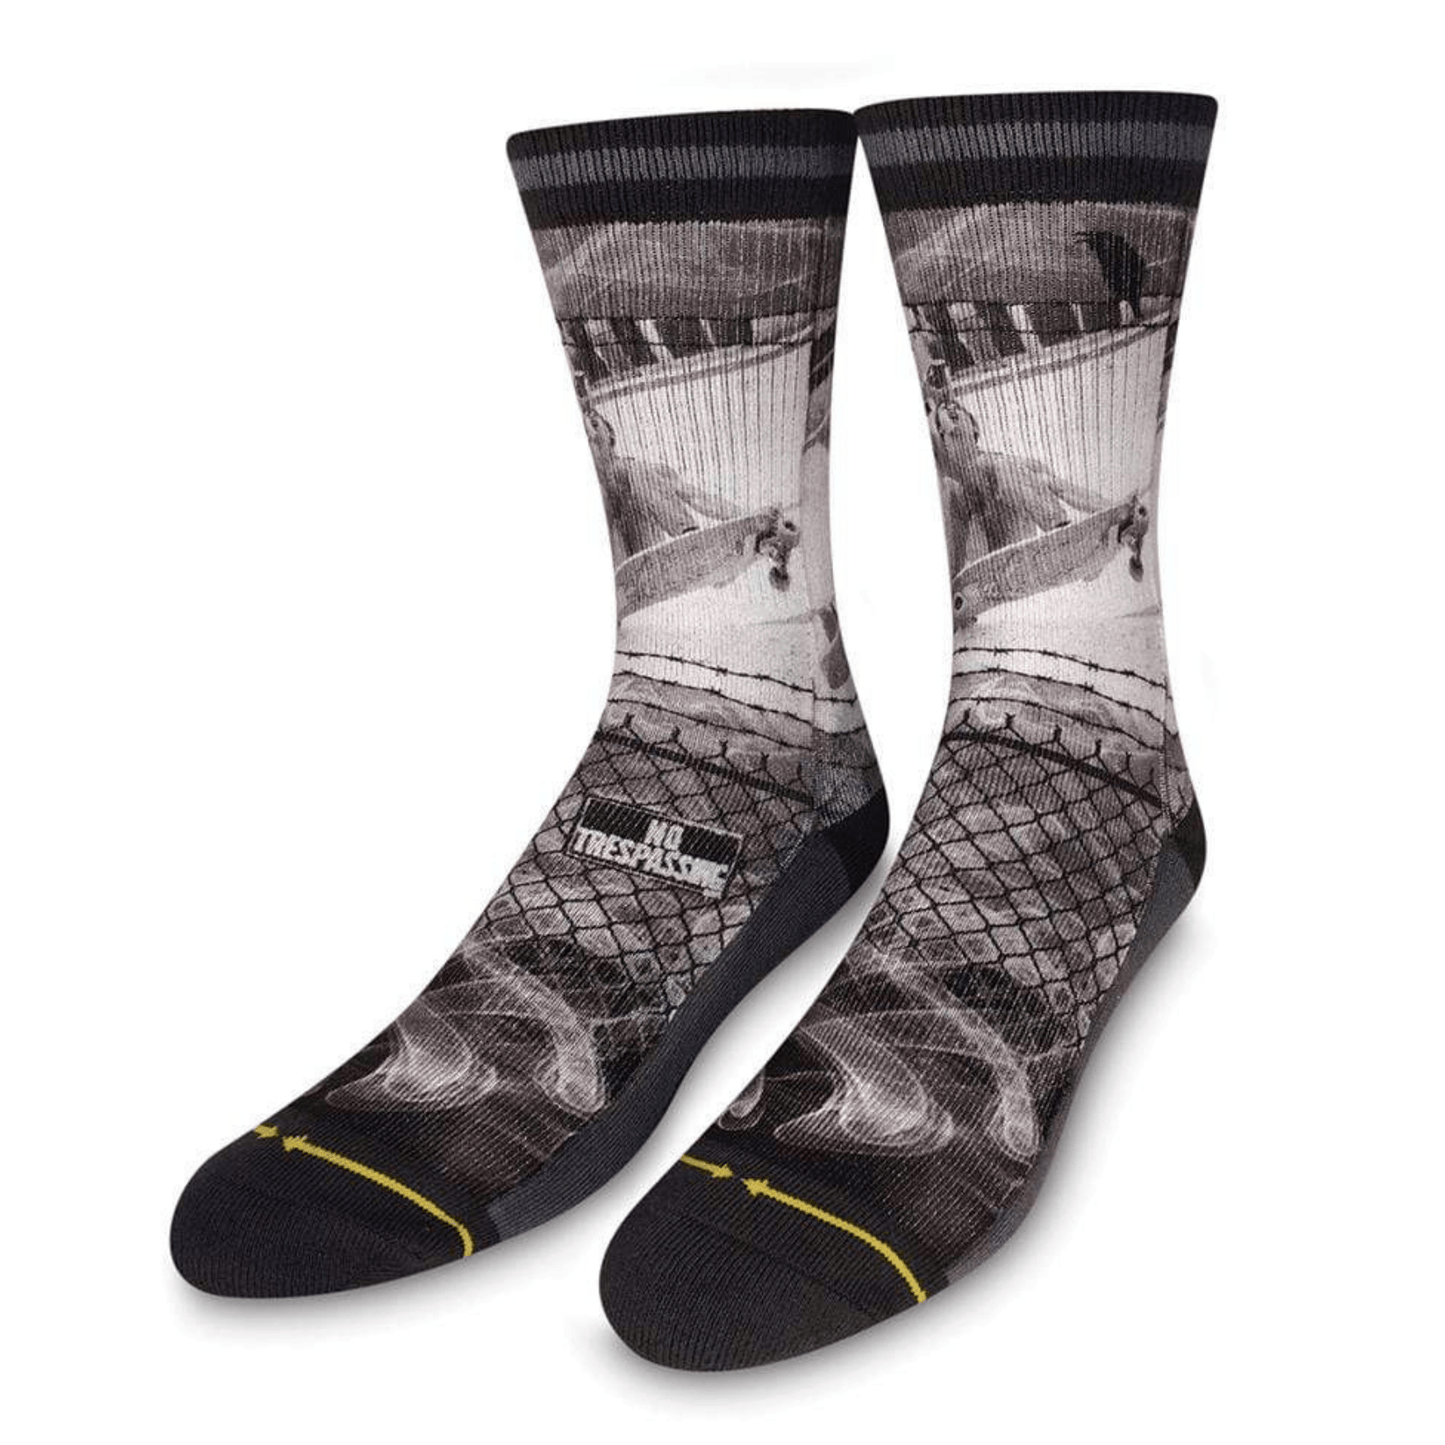 Merge 4 - Mofo Cold One Socks